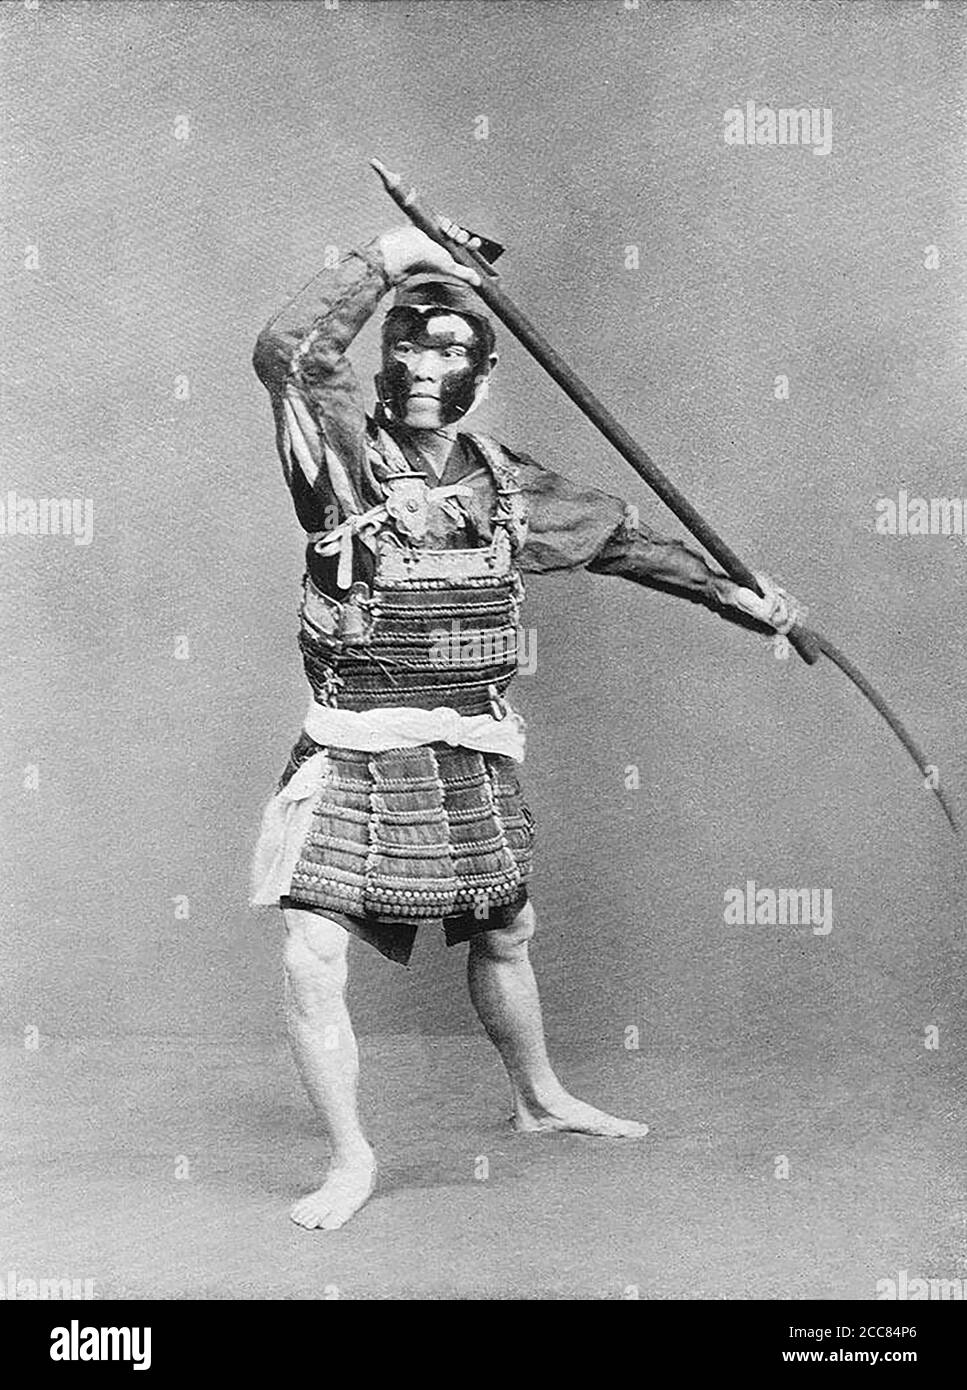 Japan: 'Ein Fußsoldat der Fujiwara Epoche'. Chemigraph aus der Serie 'Military Costumes in Old Japan' von Kazumasa Ogawa (1860-1929), 1893, Tokio. Ogawa Kazumasa, auch bekannt als Ogawa Kazuma oder Ogawa Isshin, war ein japanischer Fotograf, Chemigraph, Drucker und Verleger der Meiji-Ära. Er war ein Pionier im photomechanischen Druck und der Fotografie und wurde in den Samurai-Clan von Matsudaira geboren, wo er im Alter von 15 Jahren Englisch und Fotografie studierte. Stockfoto